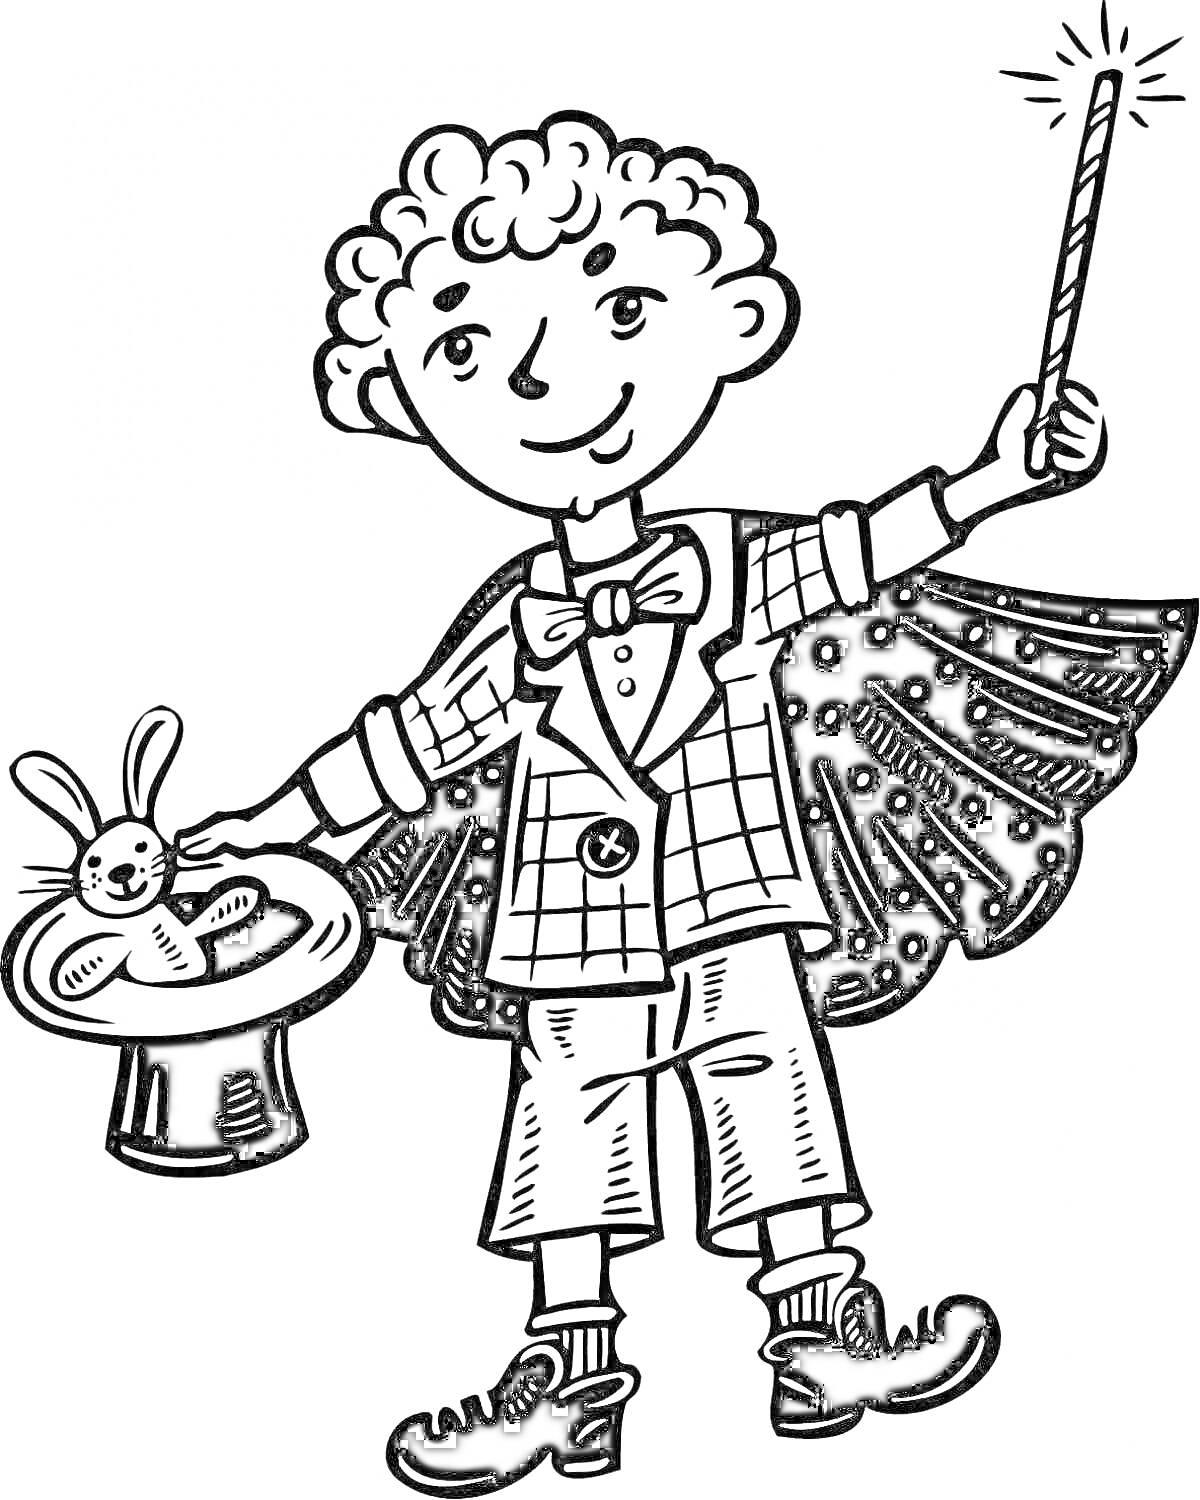 Мальчик-фокусник с волшебной палочкой, шляпой и кроликом